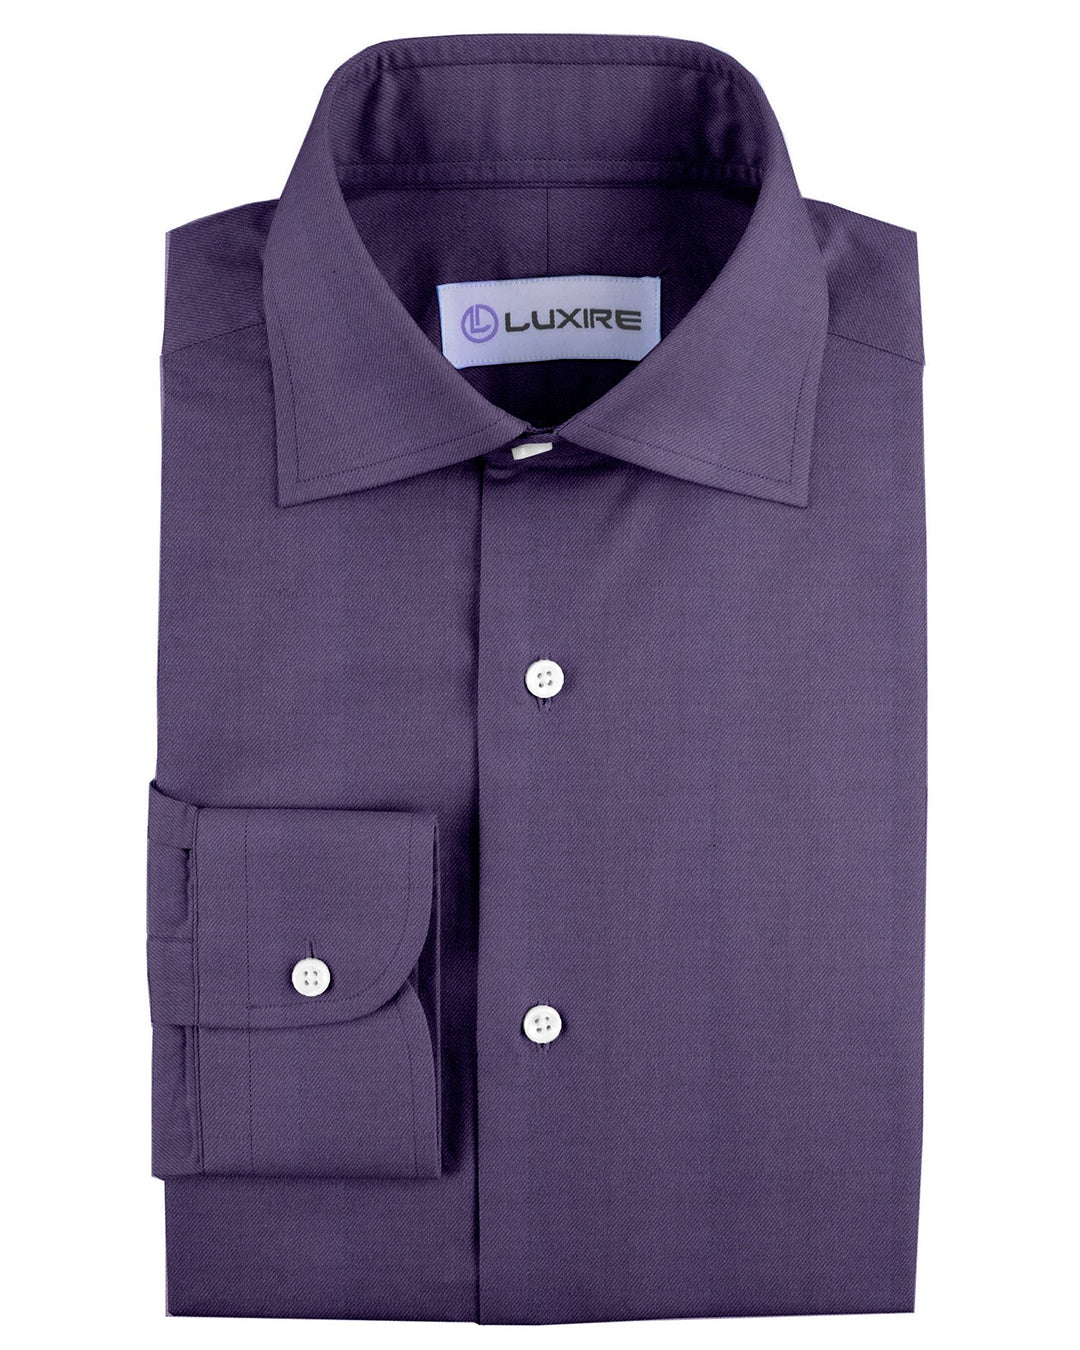 Cashmerello Alumo: Dark Purple Cotton Twill